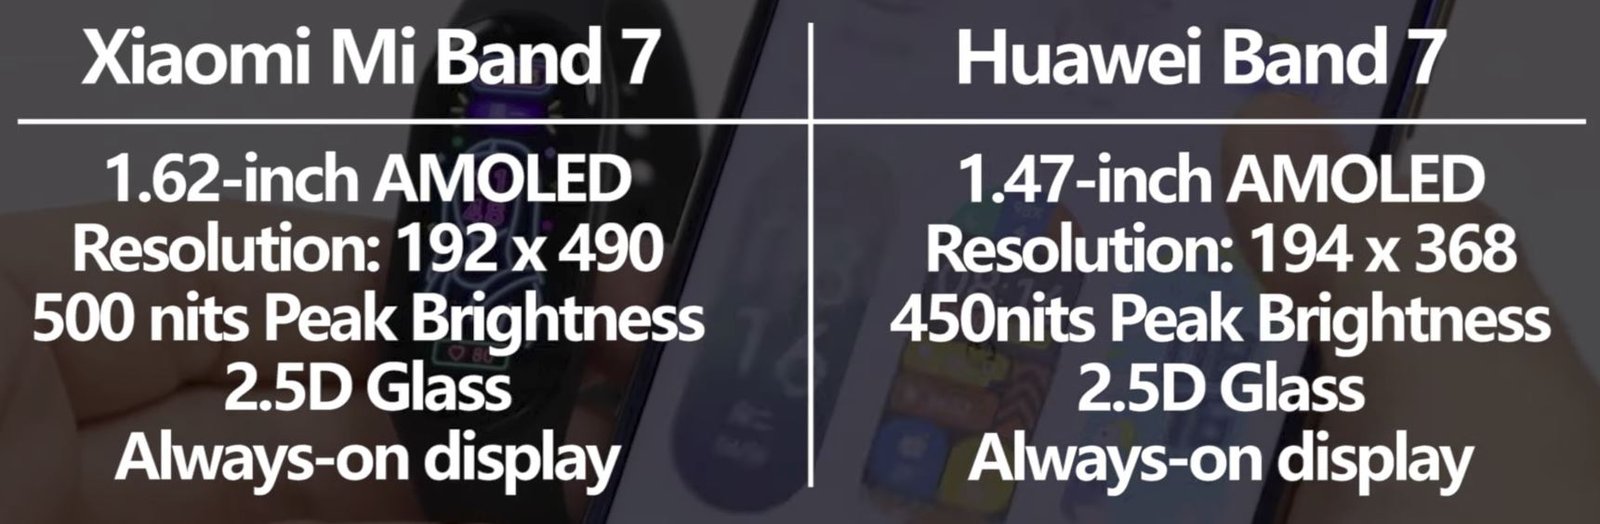 Xiaomi Mi Band 7 vs Huawei Band 7 1